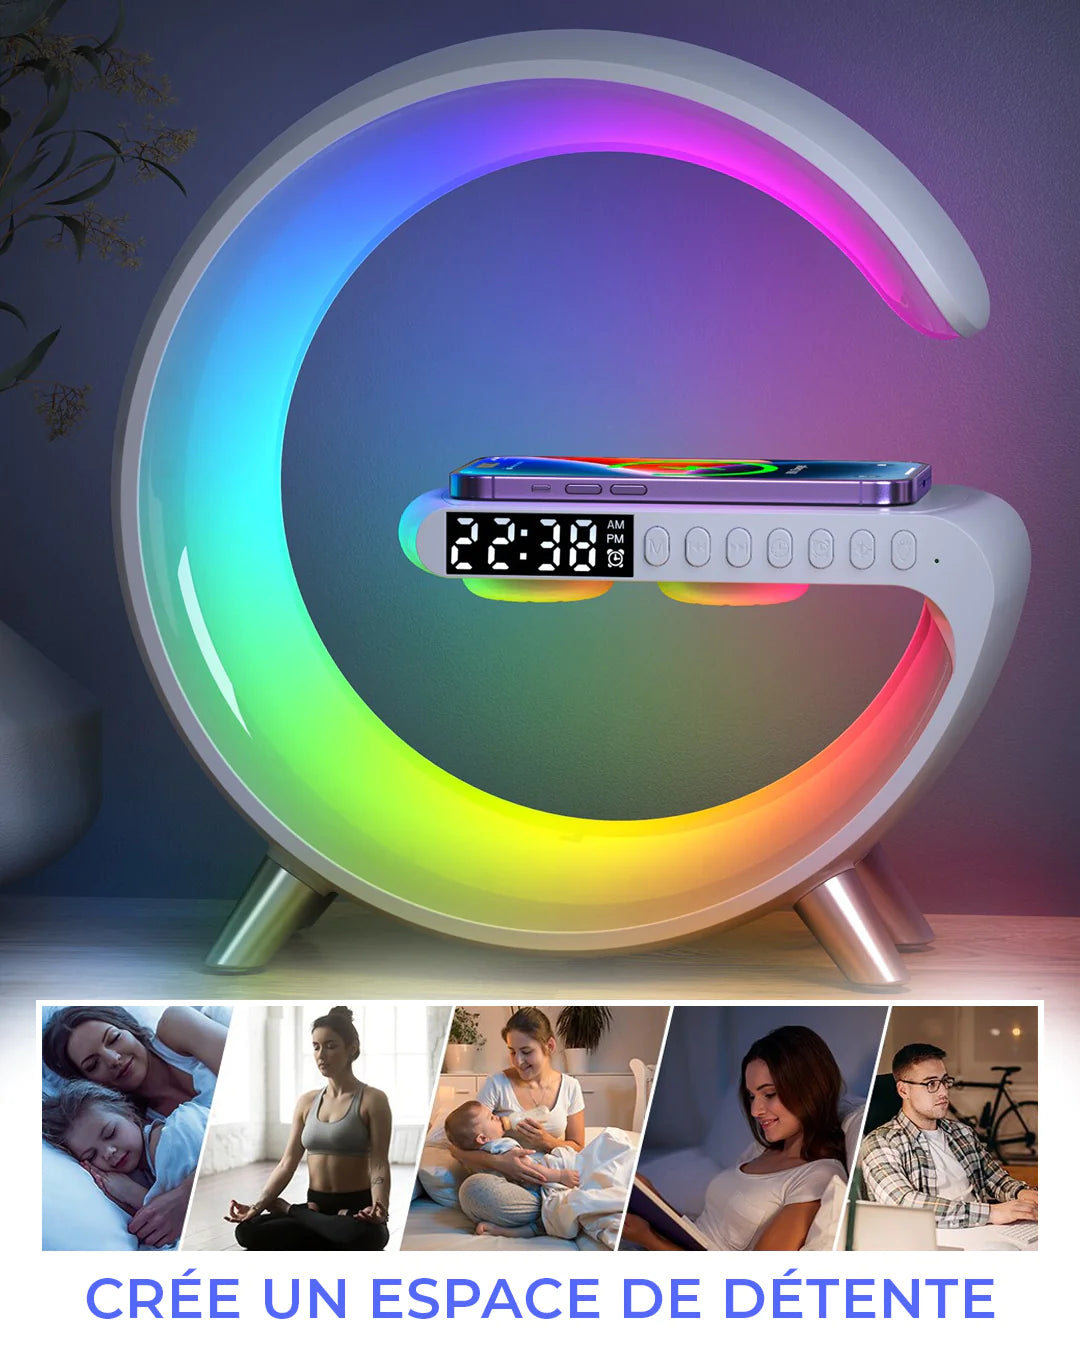 Lampe de réveil - chargeur sans fil - réveil numérique - réveil lumineux -  lampe de table - lampe LED - haut-parleur bluetooth - blanc